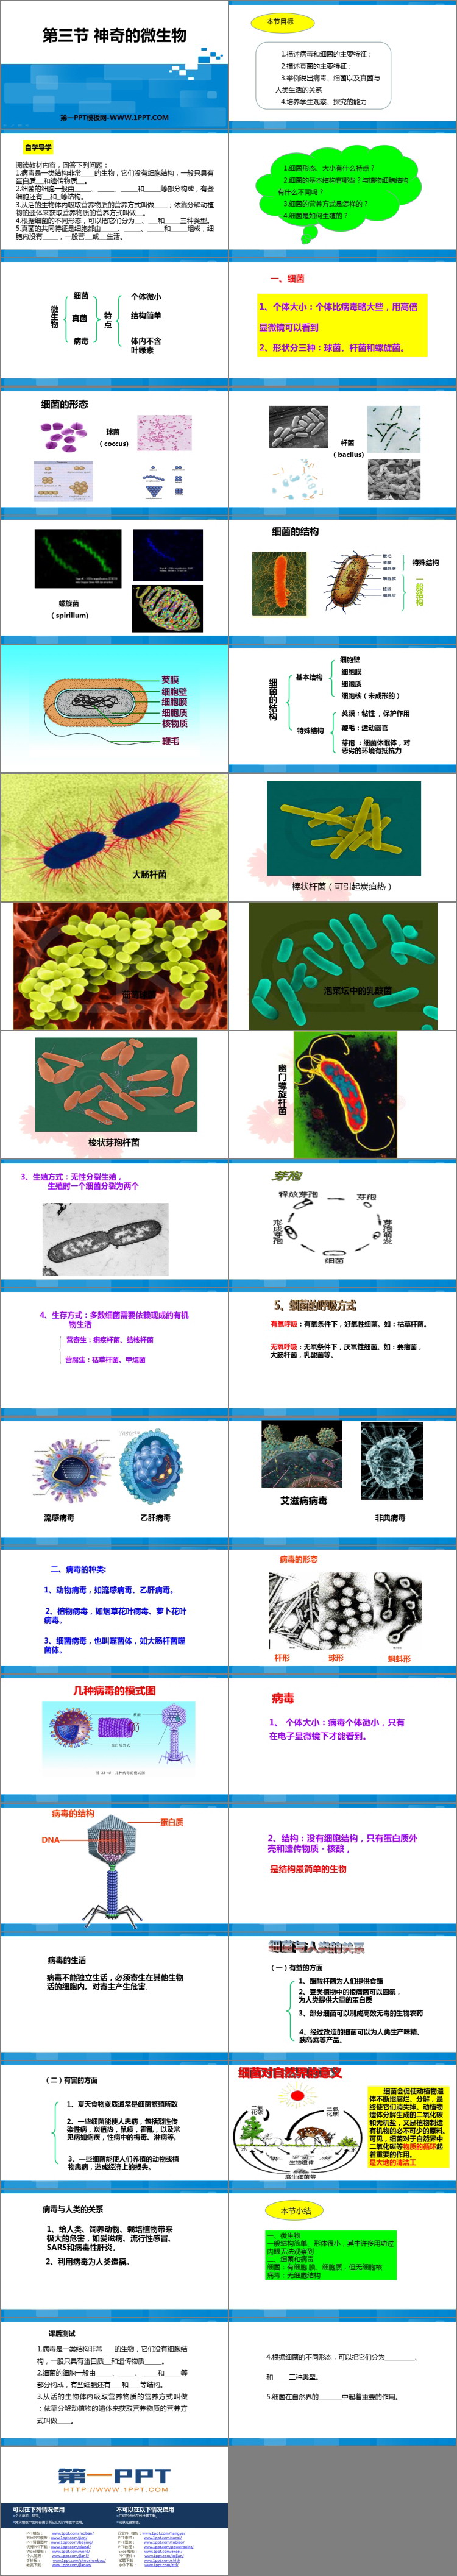 《神奇的微生物》PPT教学课件-预览图02